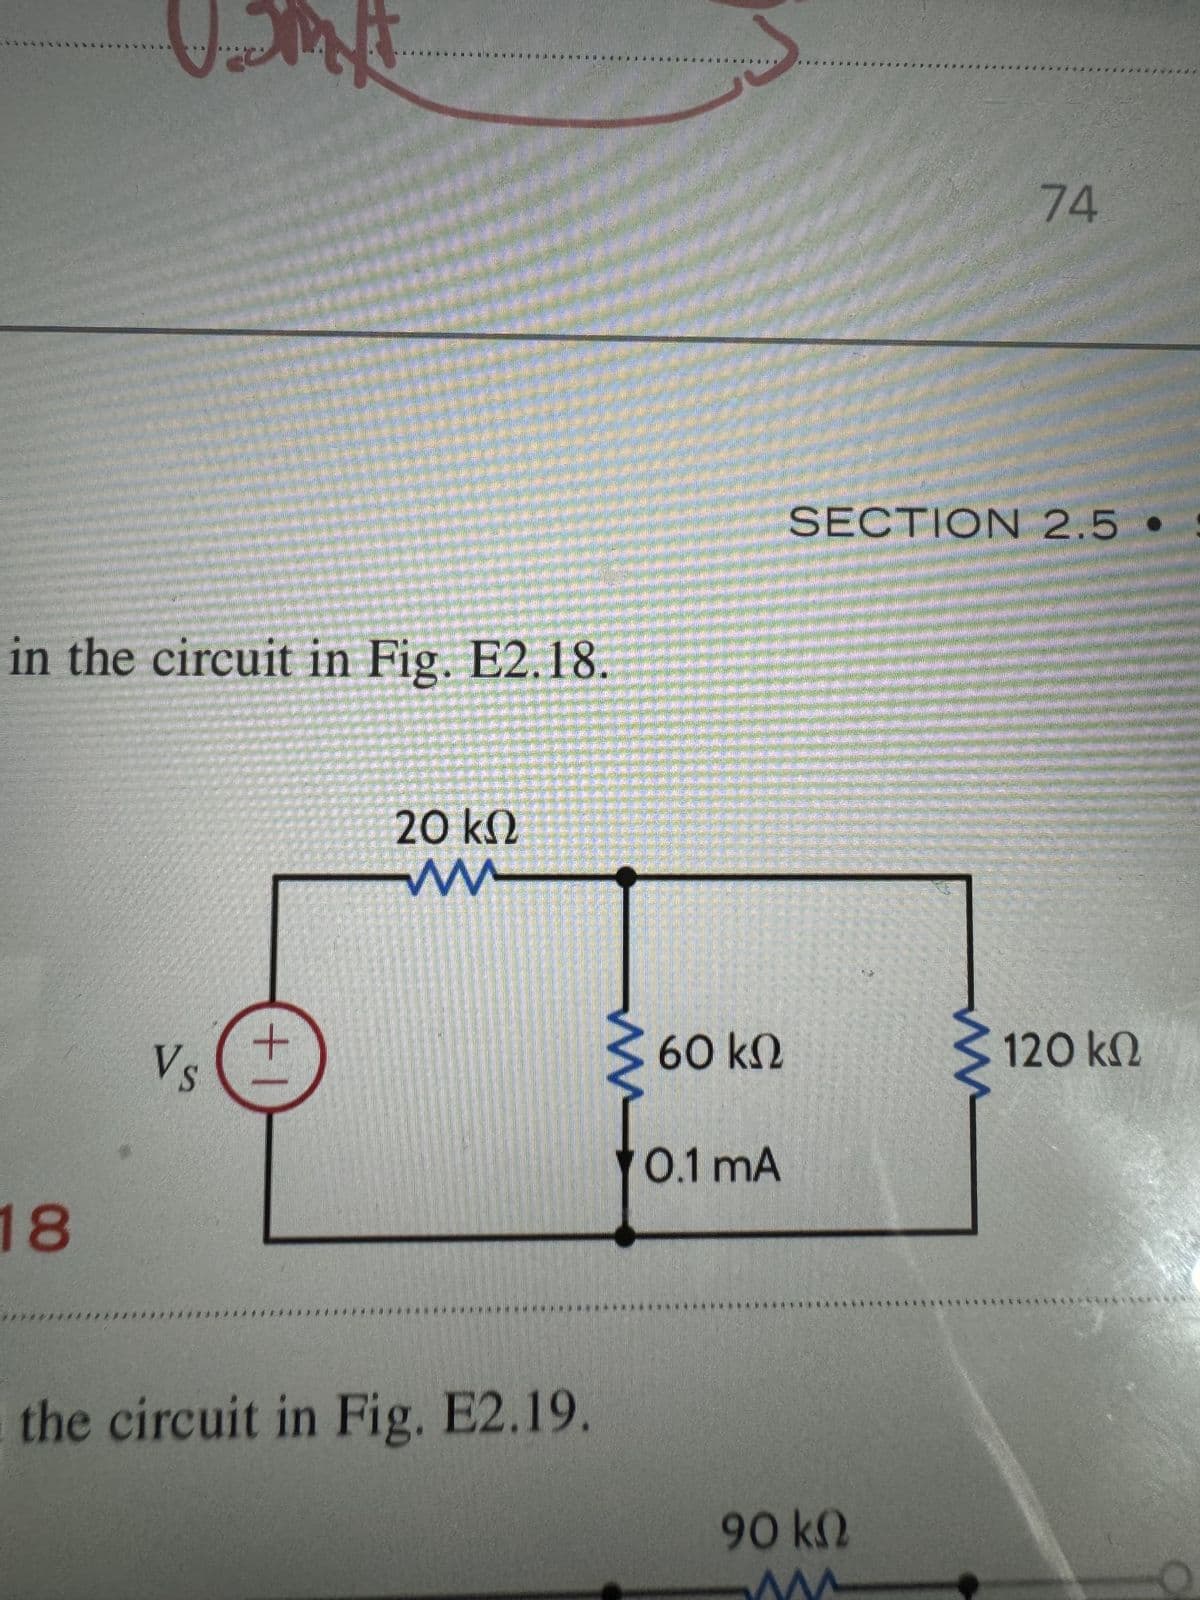 U.SM
74
in the circuit in Fig. E2.18.
18
Vs
+1
20 ΚΩ
ww
SECTION 2.5.
60 ΚΩ
120 ΚΩ
0.1 mA
the circuit in Fig. E2.19.
90 ΚΩ